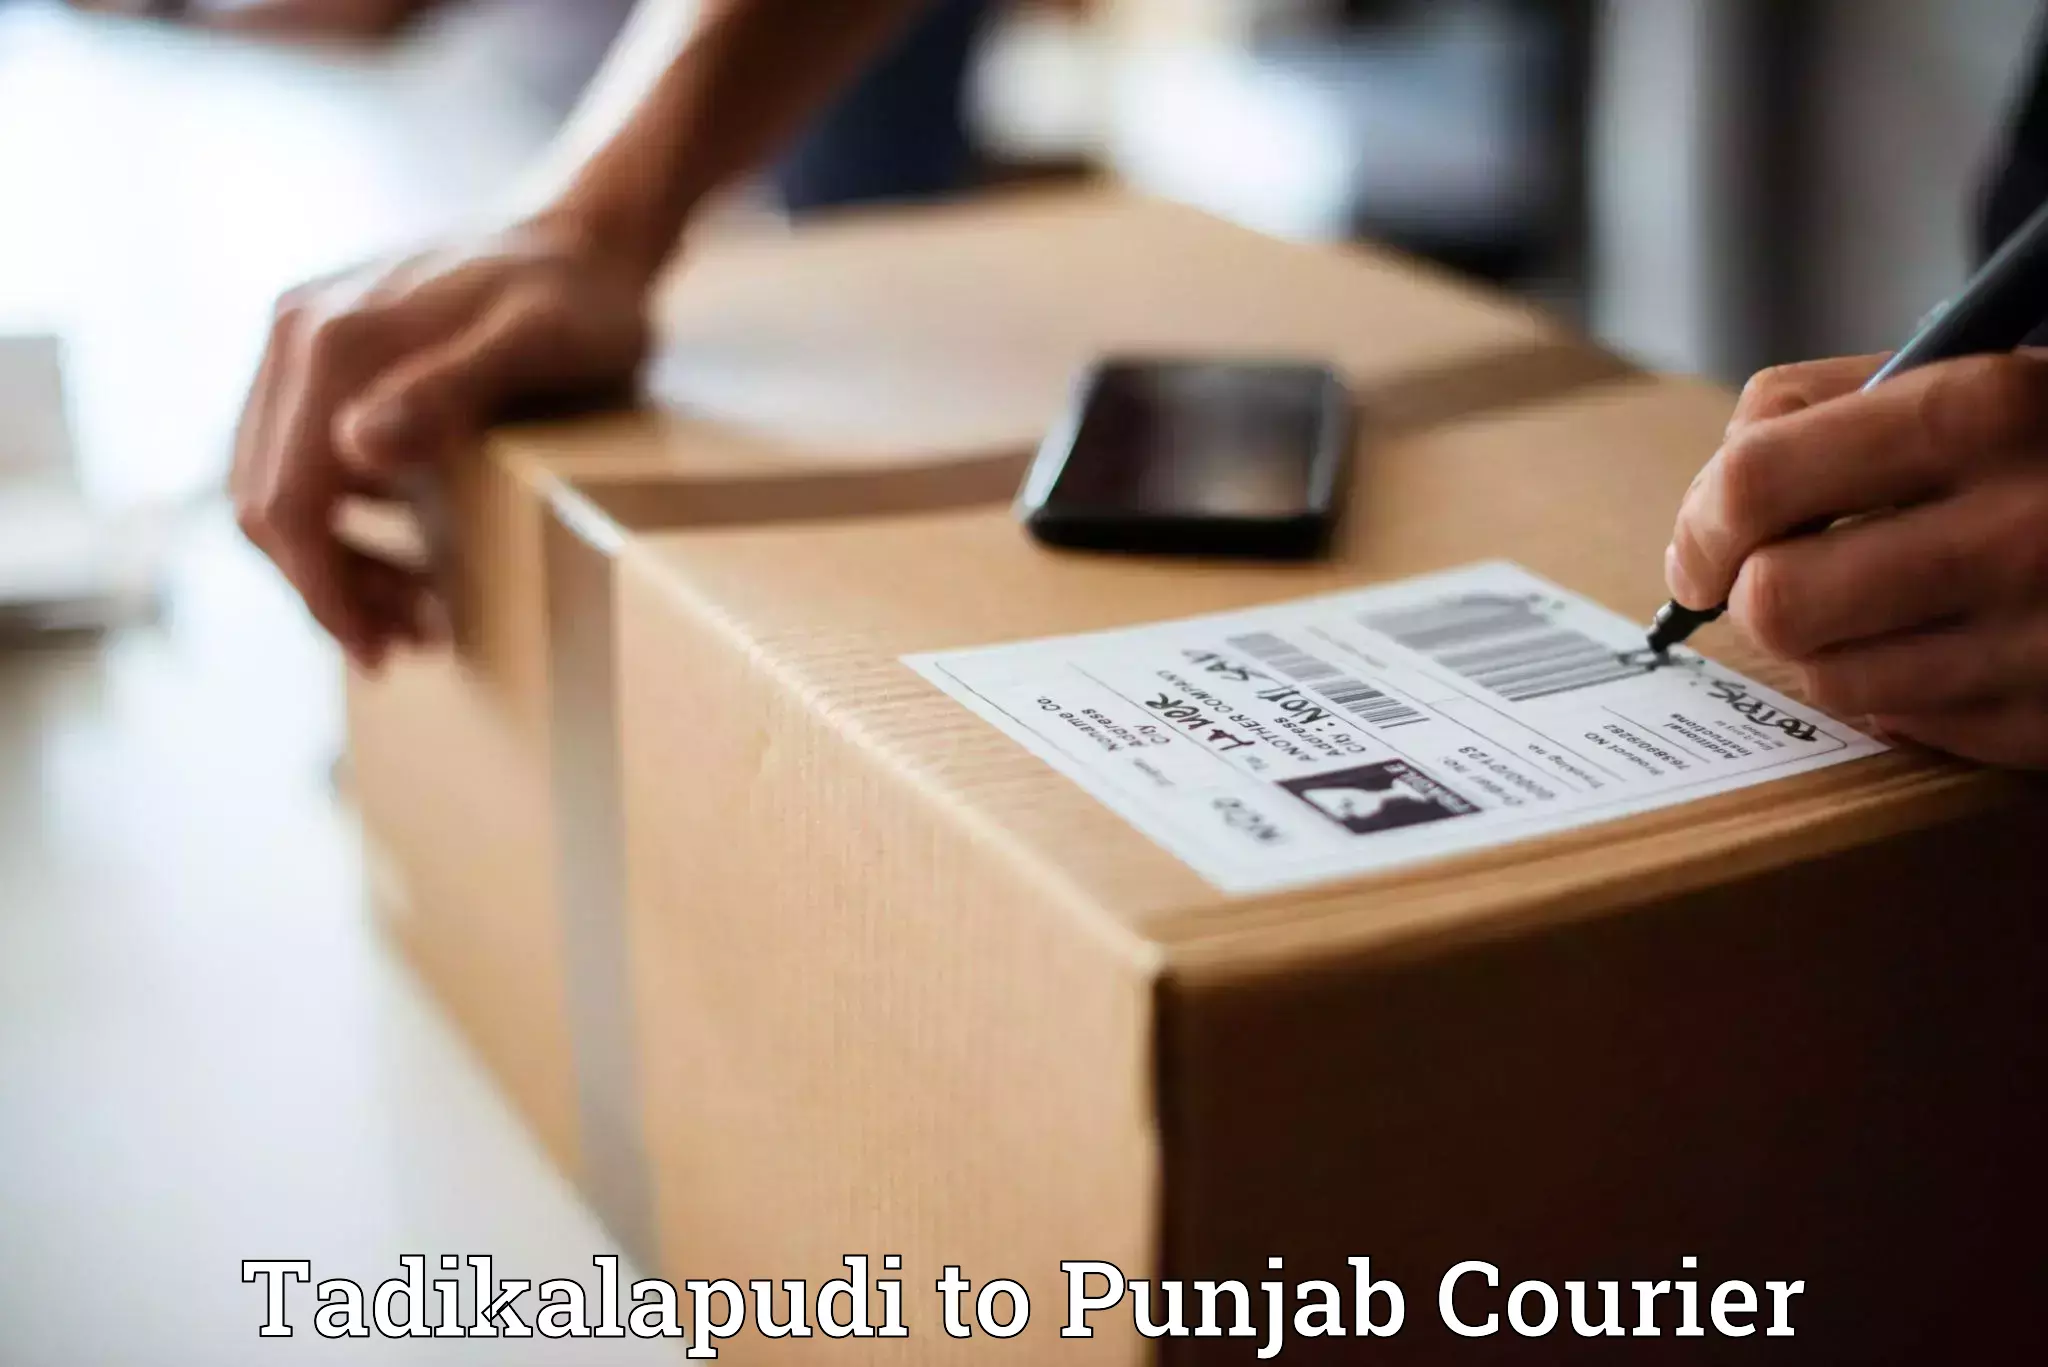 Quality courier partnerships Tadikalapudi to Mohali